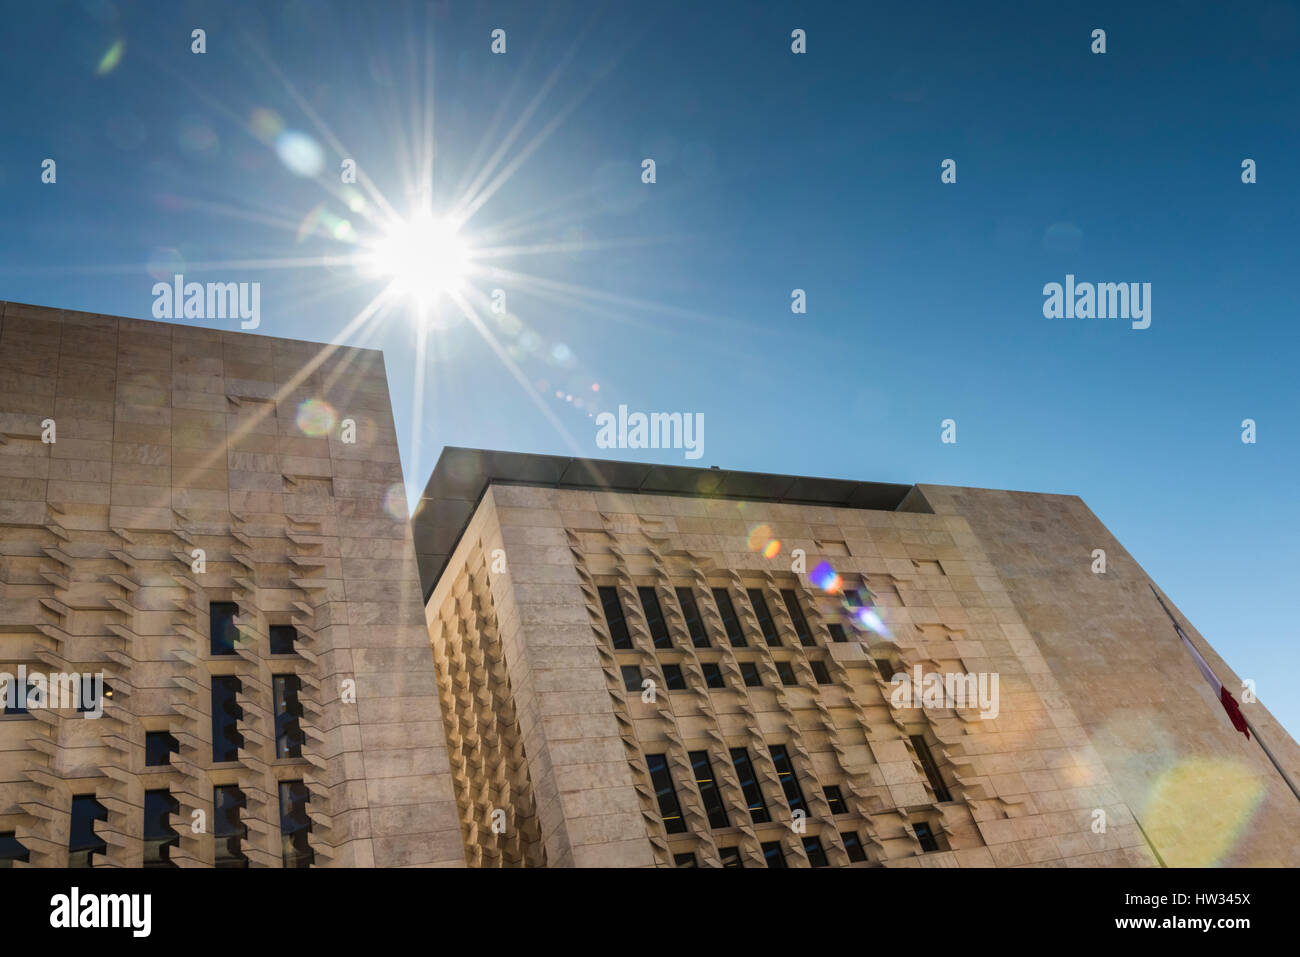 Le bâtiment du Parlement européen à Malte La Valette Malte avec sun flare. Architecture conçue par Renzo Piano. La Valette est la capitale européenne de la Culture 2018 Banque D'Images